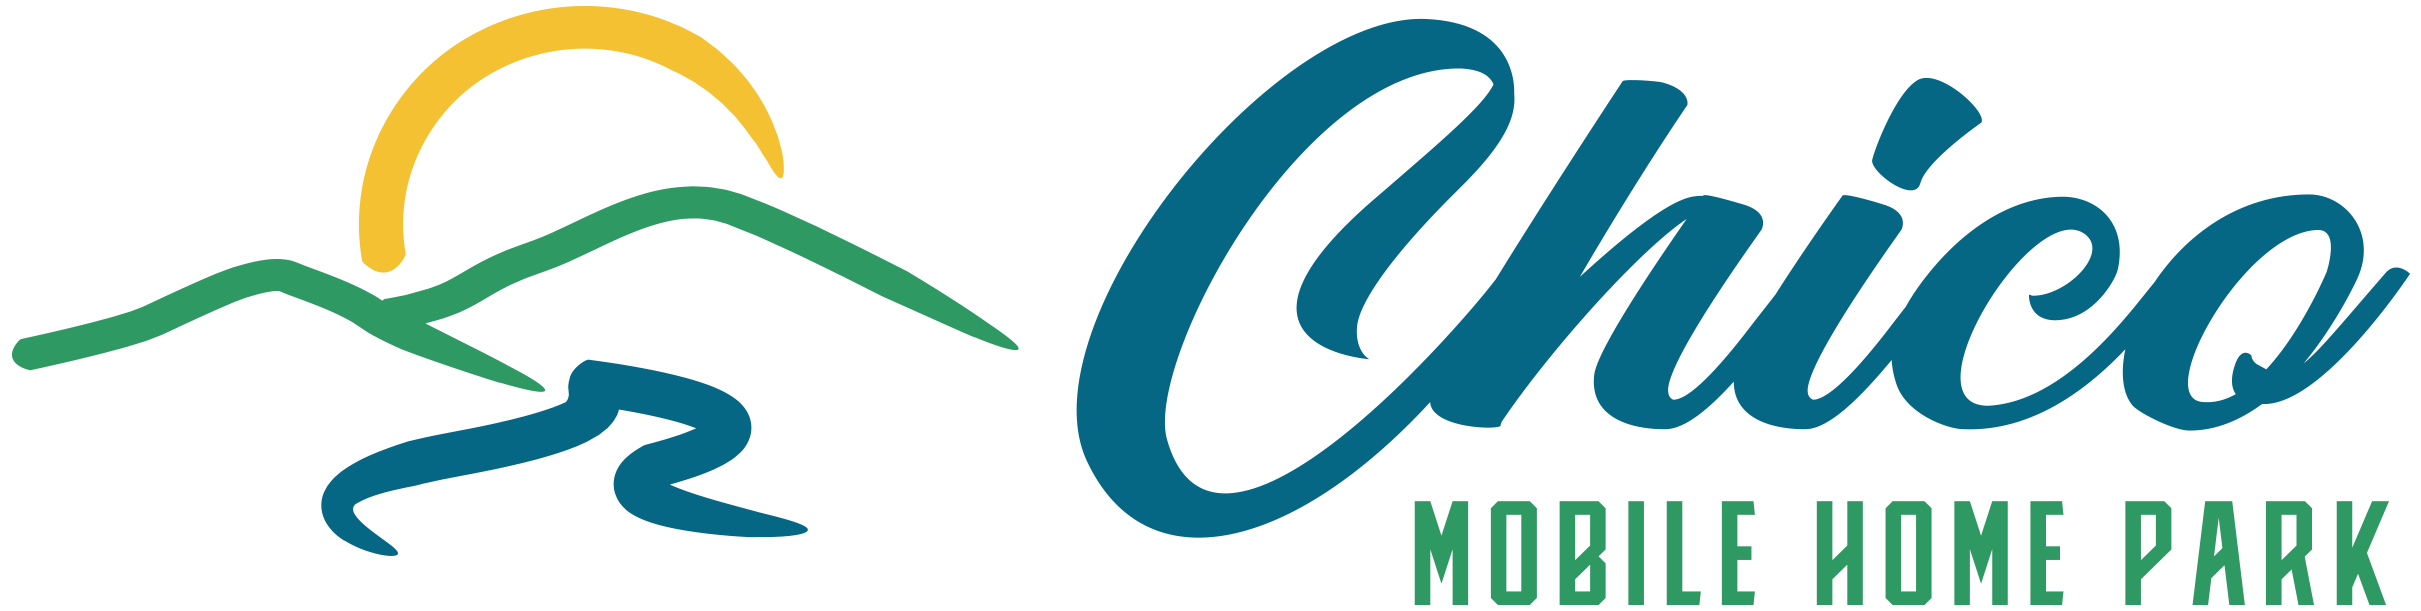 Chico Mobile Home Park Logo